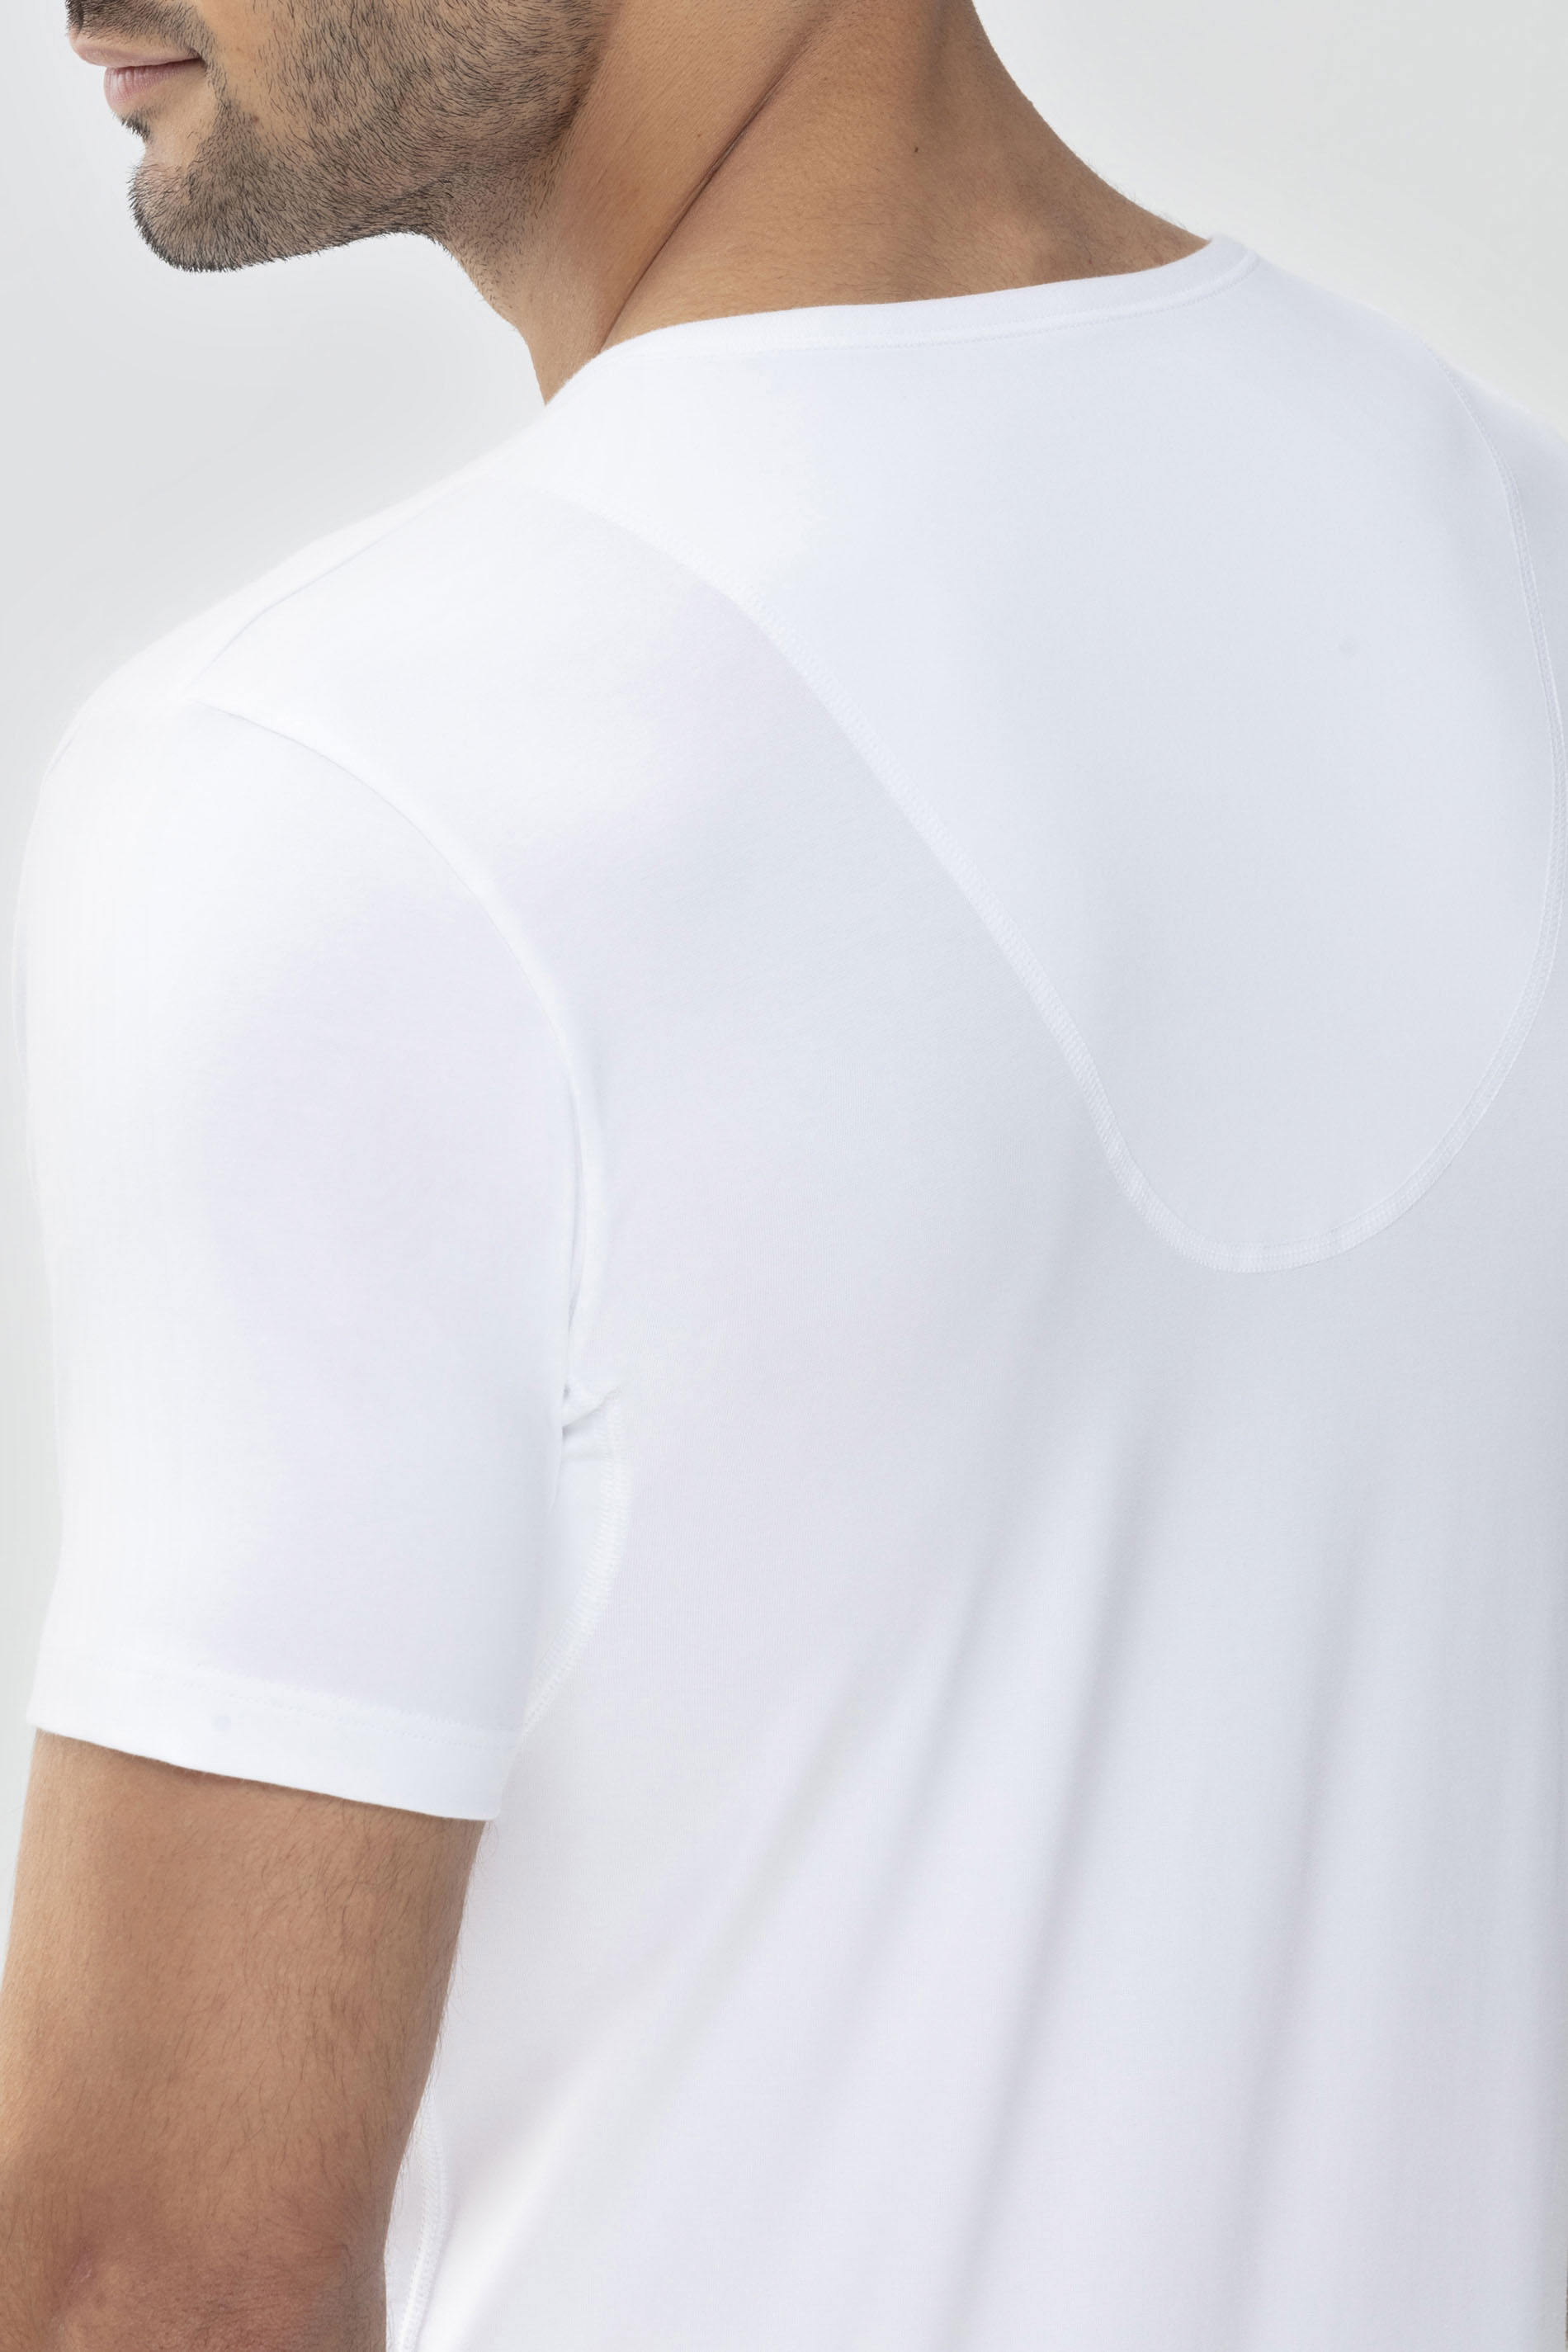 Das Drunterhemd - V-Neck Weiss Serie Dry Cotton Functional  Detailansicht 01 | mey®